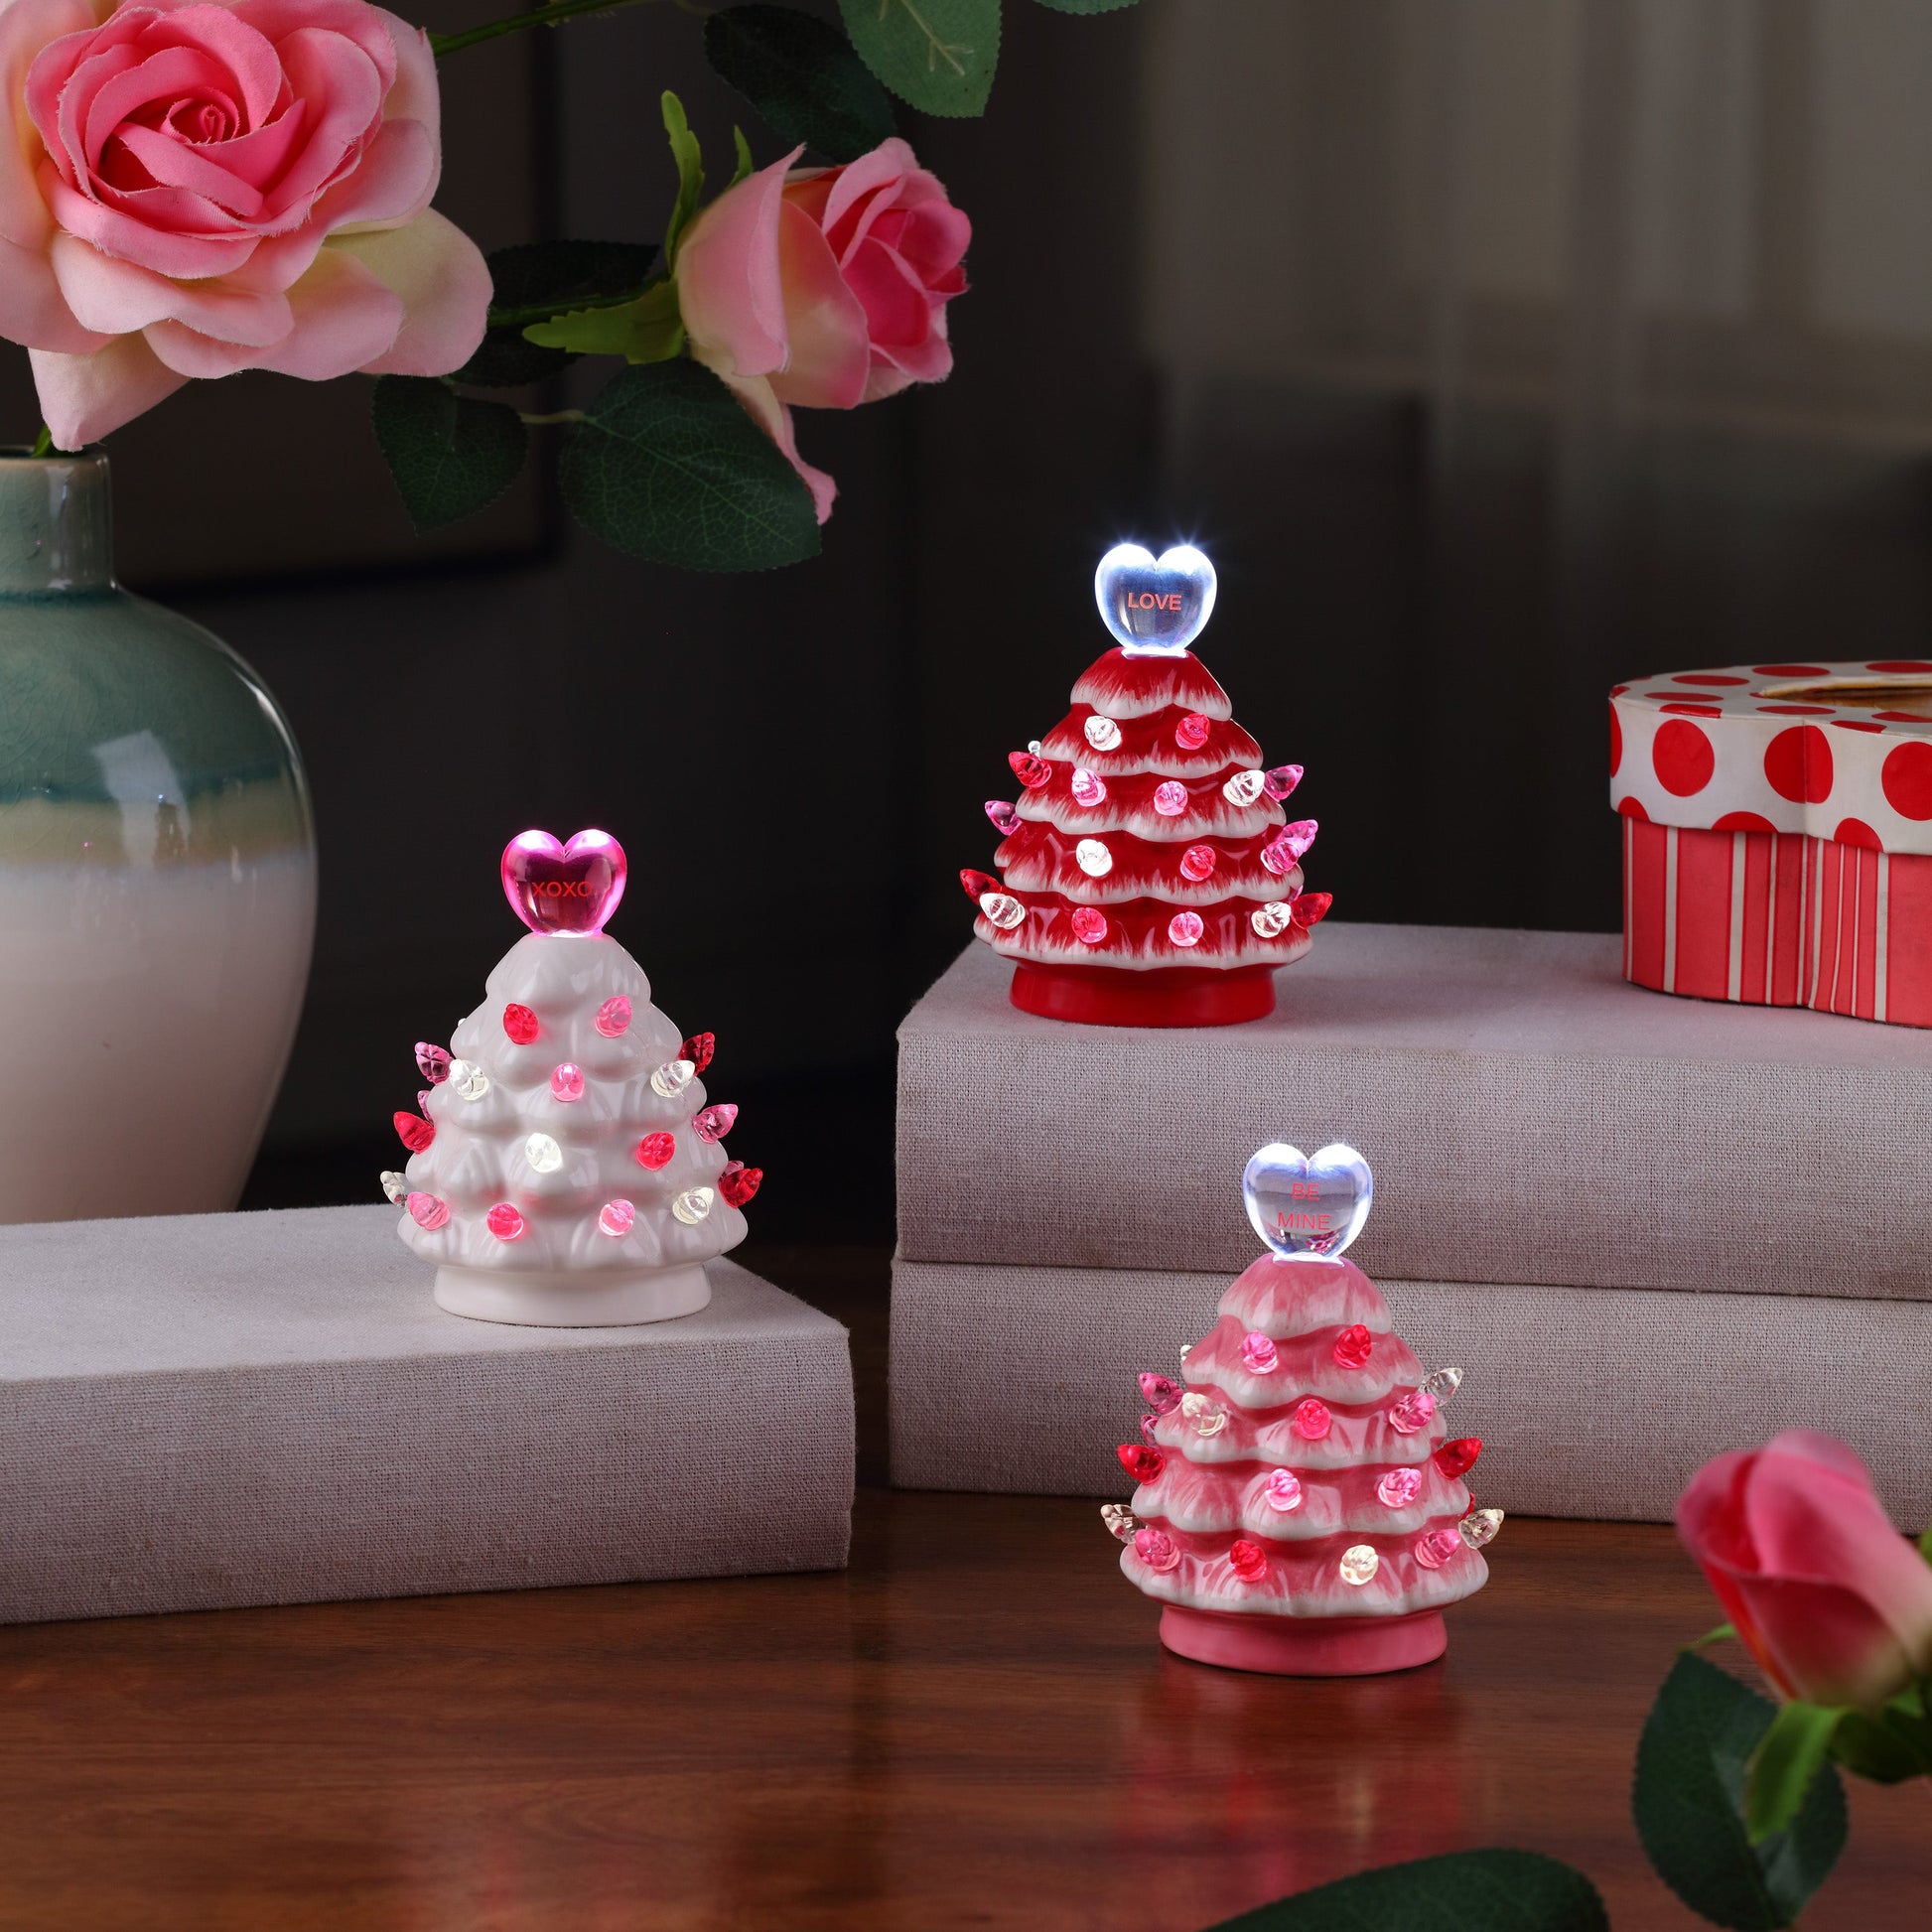 Miss Valentine Set of 3 Ceramic 4.1" Miniature Trees - Mr. Christmas